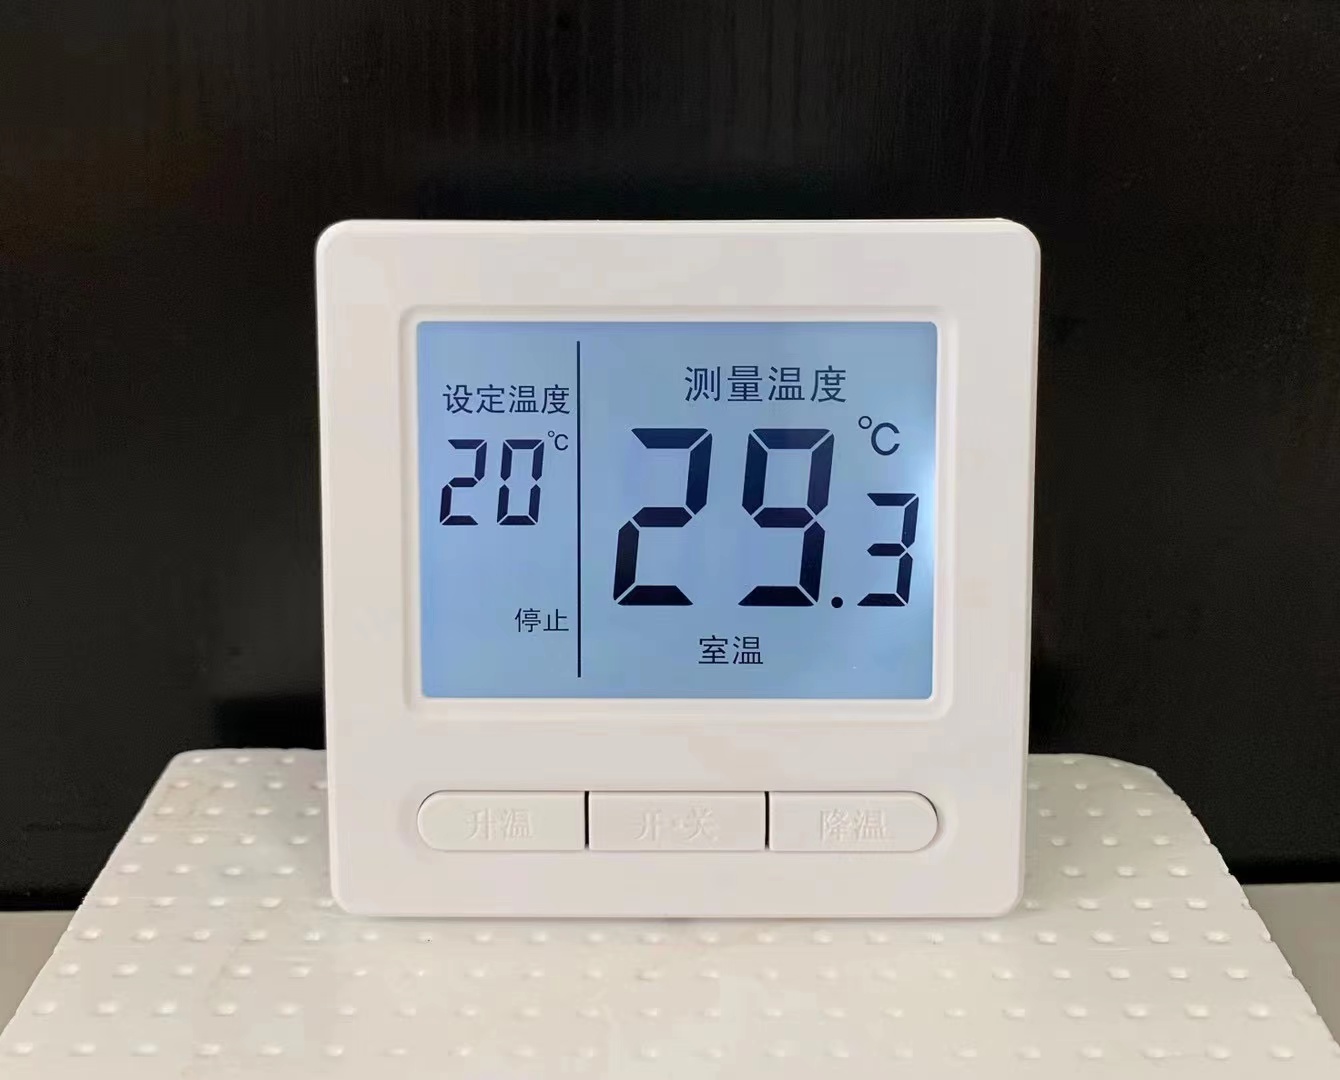 電伴熱溫度控制器